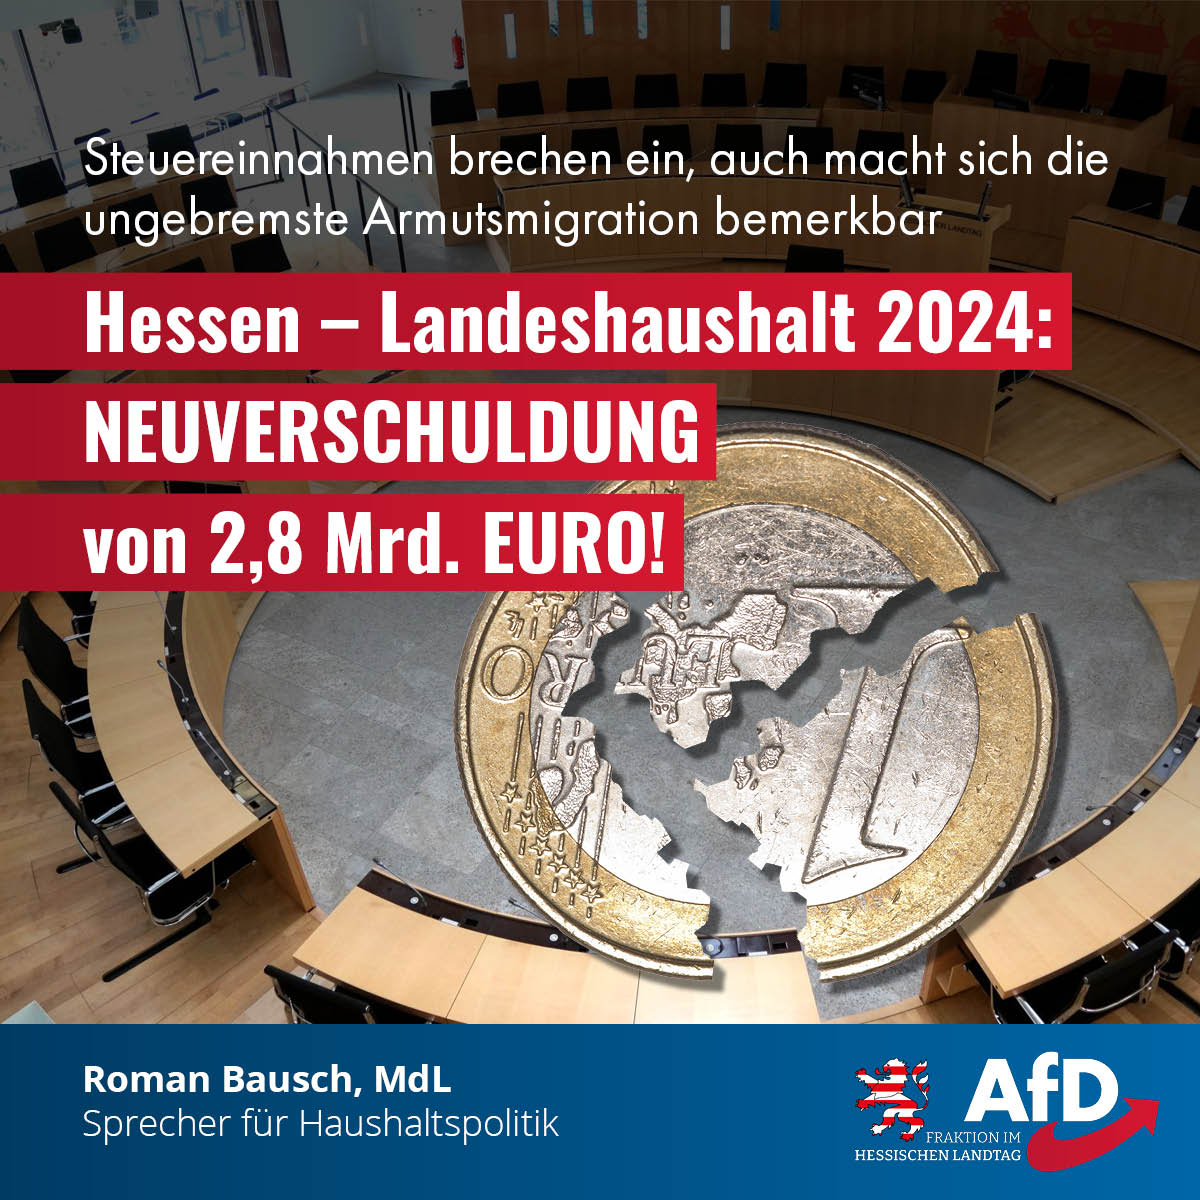 Mehr über den Artikel erfahren Landeshaushalt 2024: Trotz Neuverschuldung von 2,8 Mrd. Euro – vom CDU-Wahlkampfschlager „Hessengeld“ bleibt nur ein Schatten